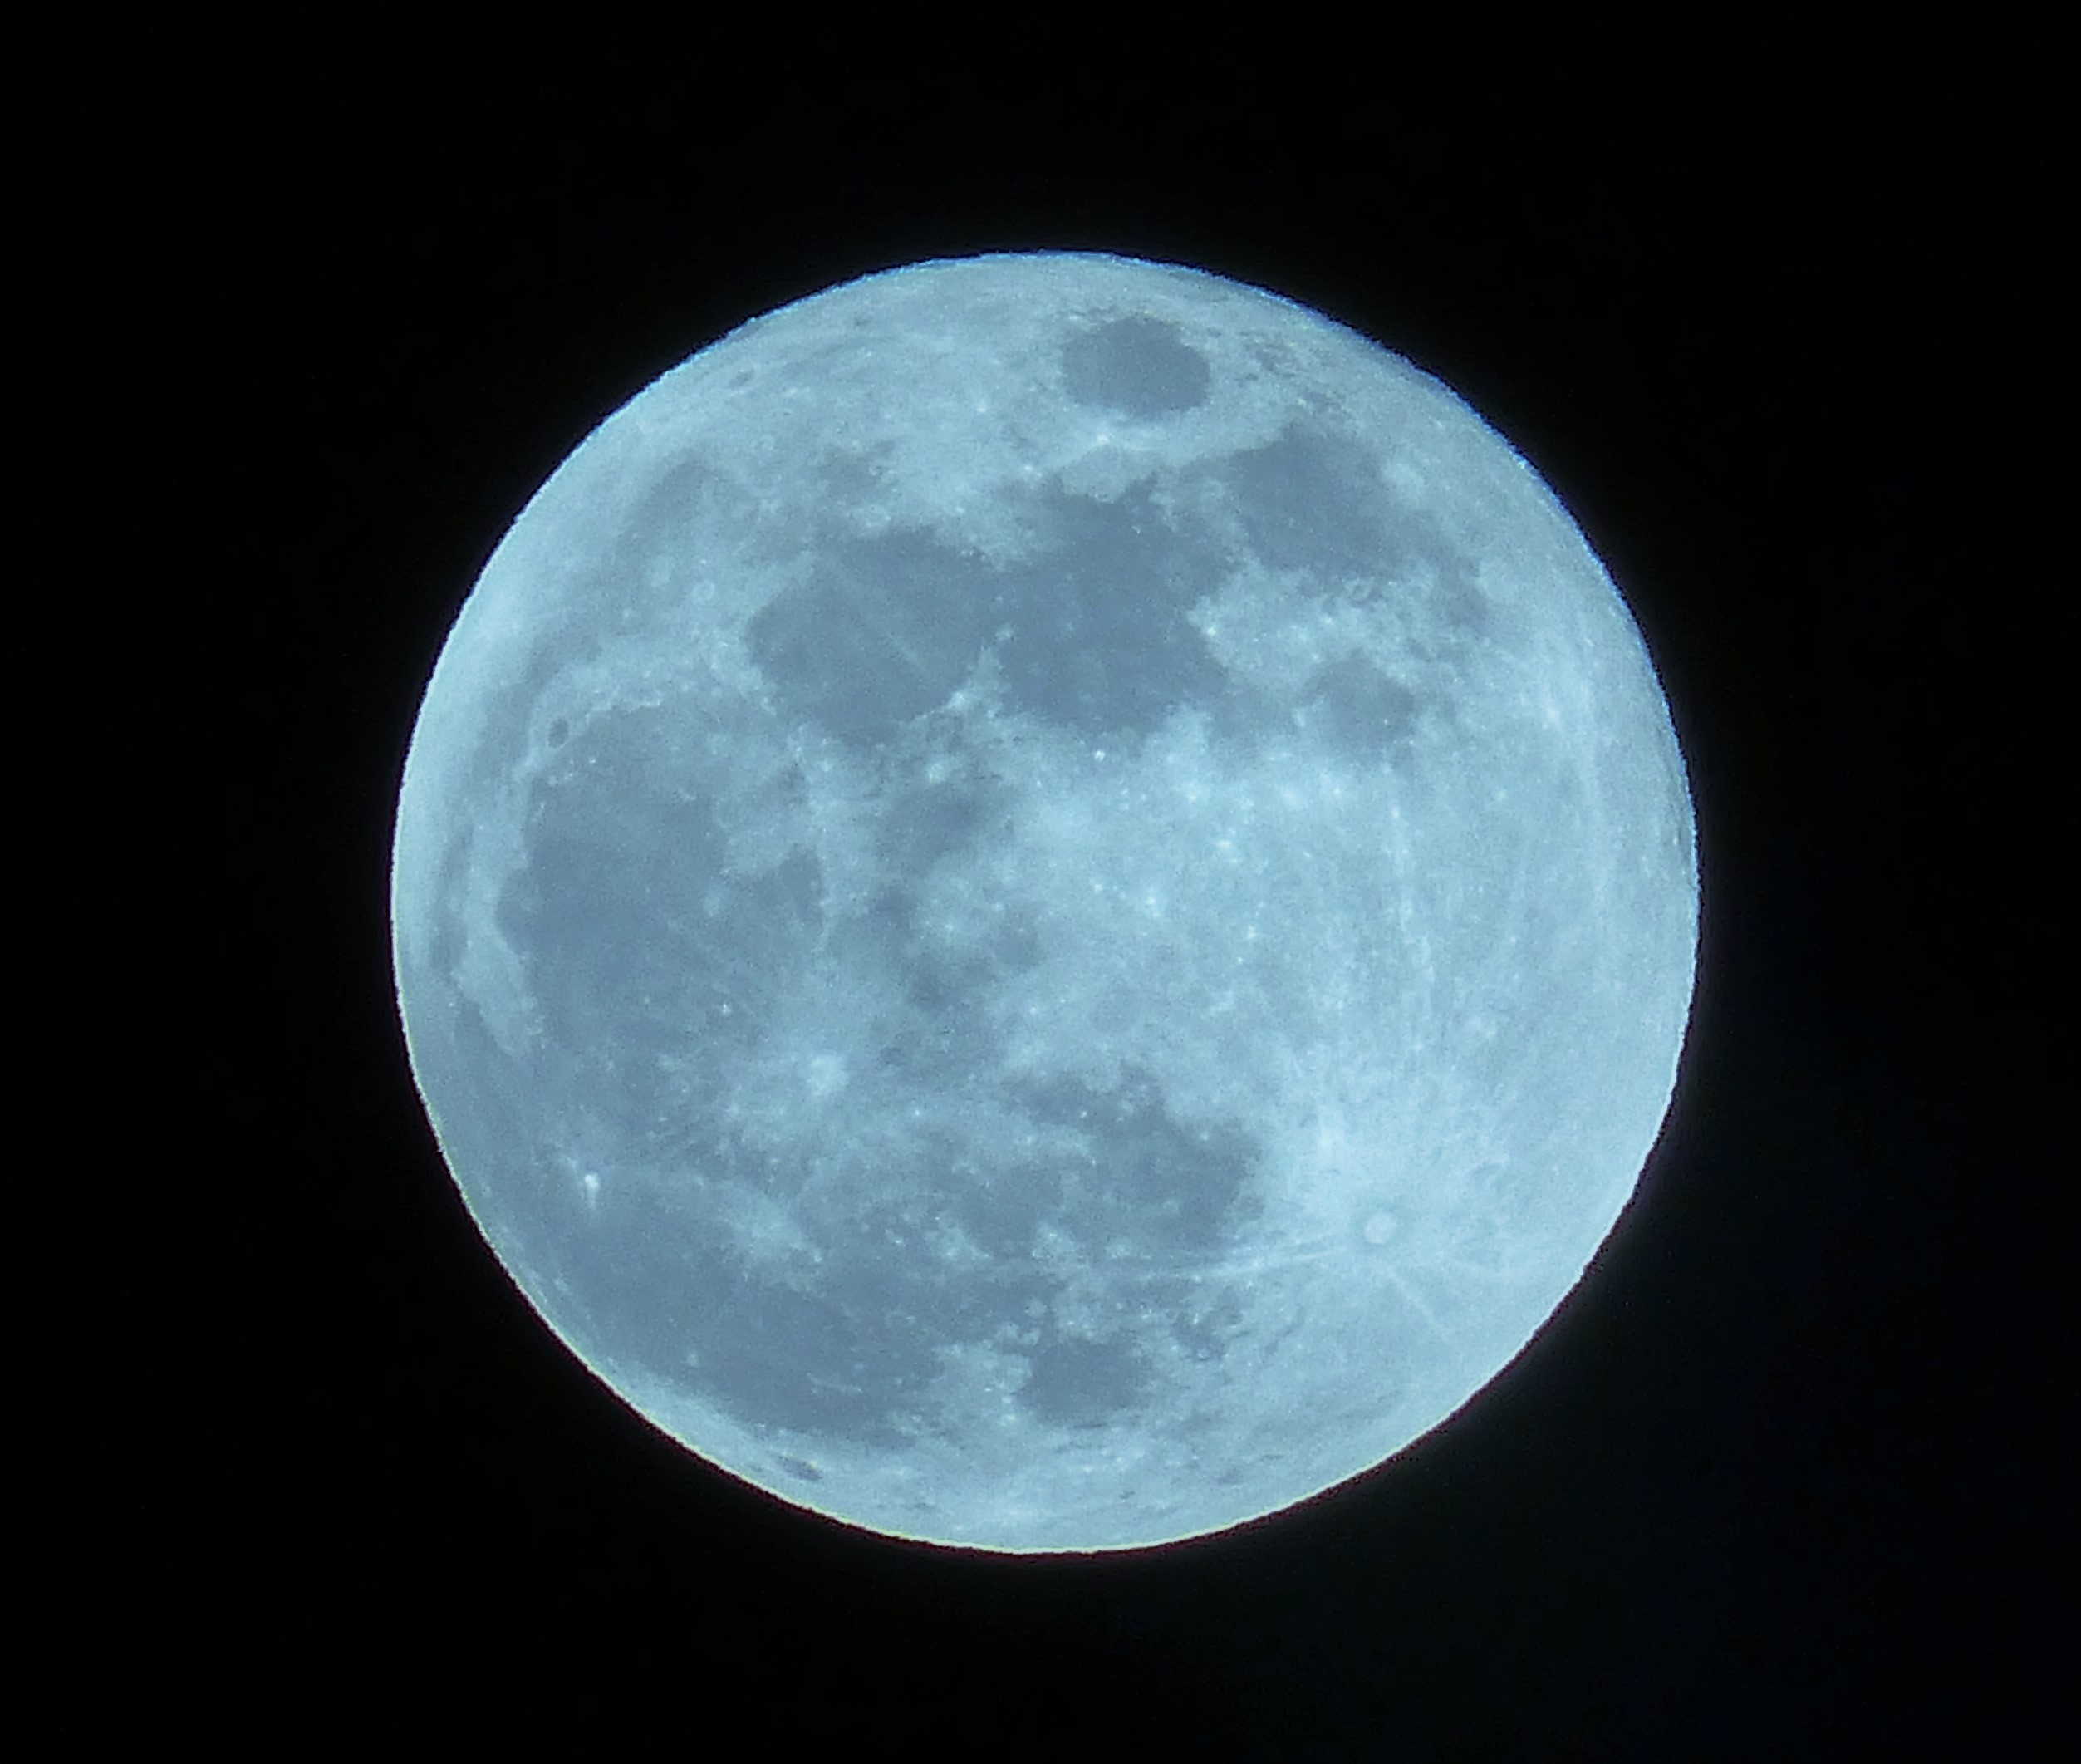 Το «μπλε φεγγάρι» δεν είναι το μόνο σπάνιο θέαμα στον νυχτερινό ουρανό αυτή την εβδομάδα